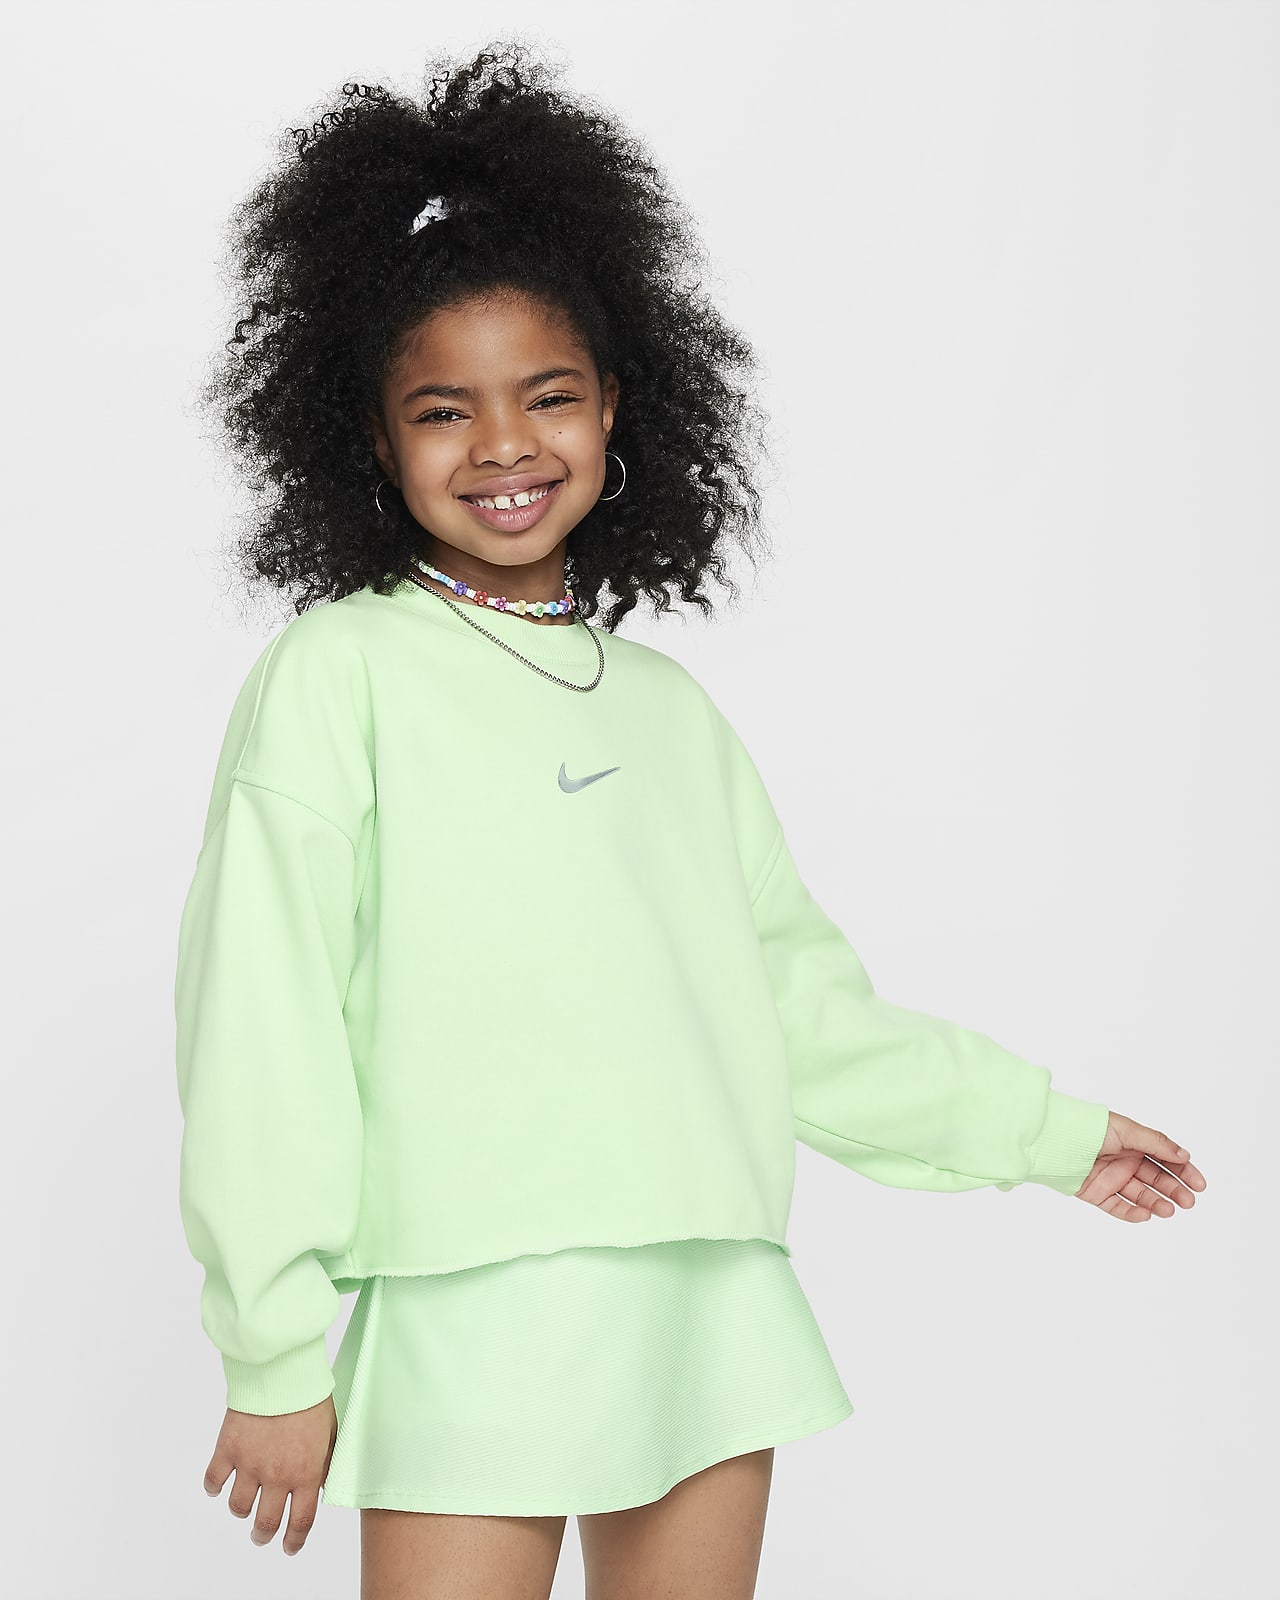 Nike Sportswear Older Kids' (Girls') Dri-FIT Crew-Neck Sweatshirt